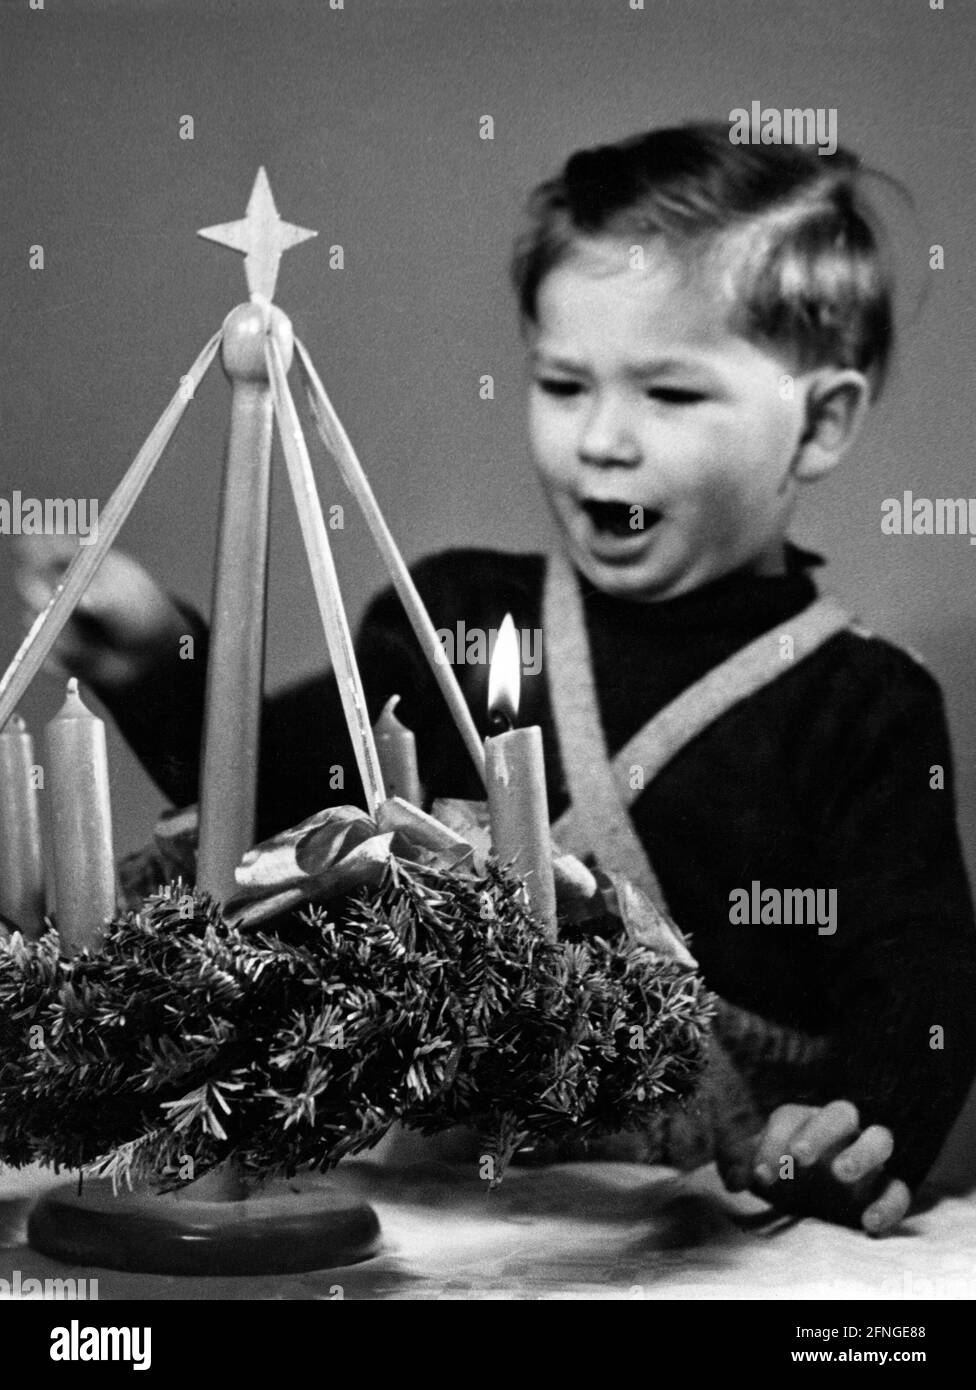 Un petit garçon regarde avec enthousiasme une couronne de l'Avent, 40s [traduction automatique] Banque D'Images